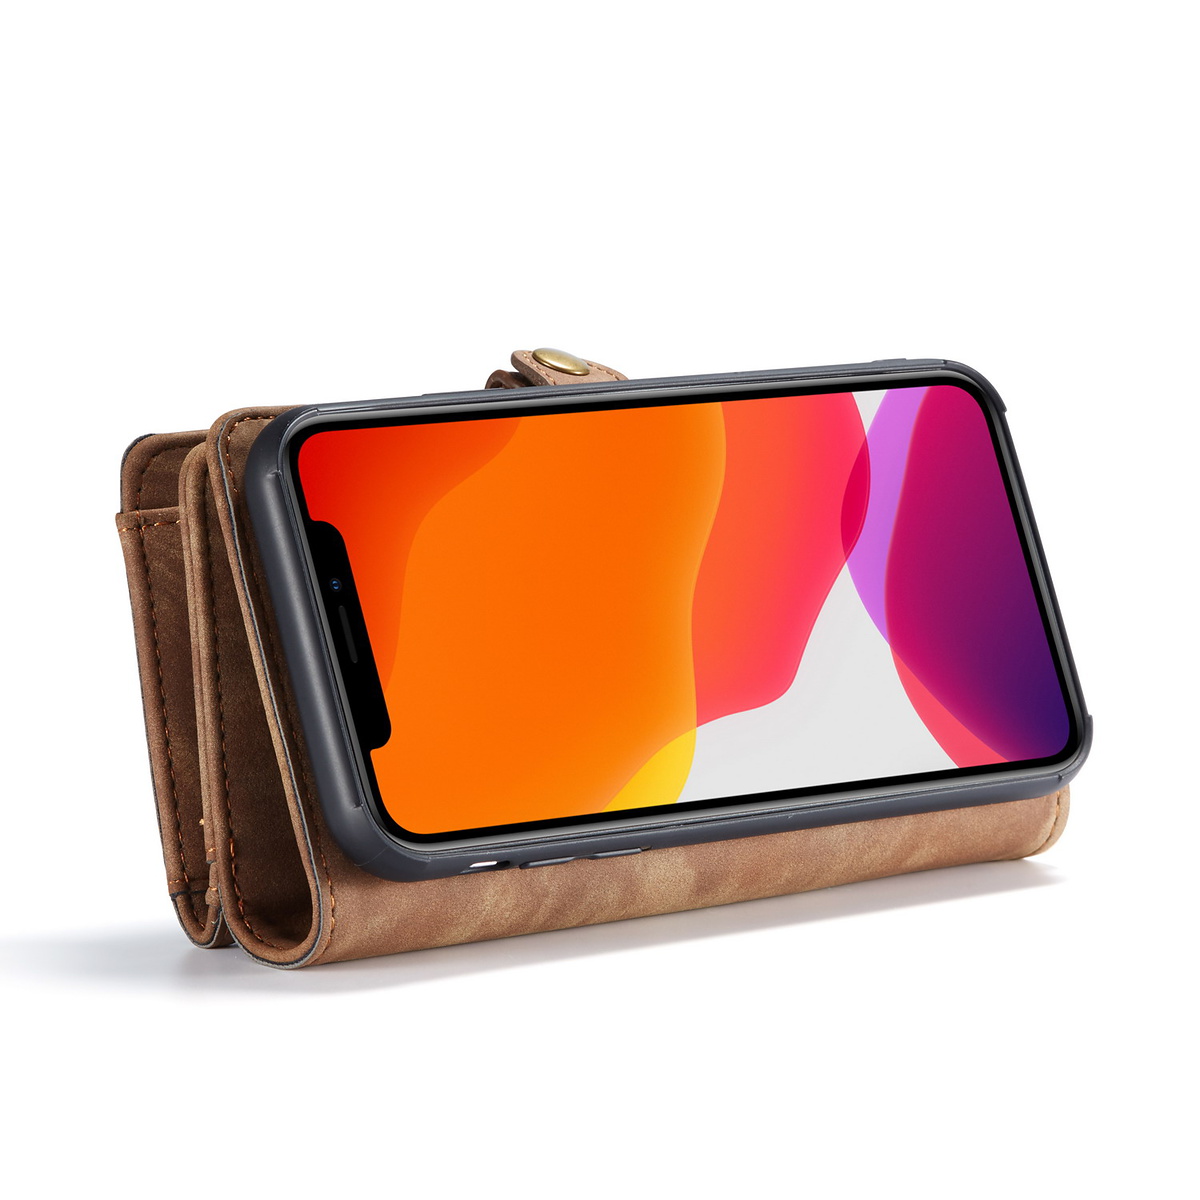 CaseMe plånboksfodral med magnetskal, iPhone 11, brun